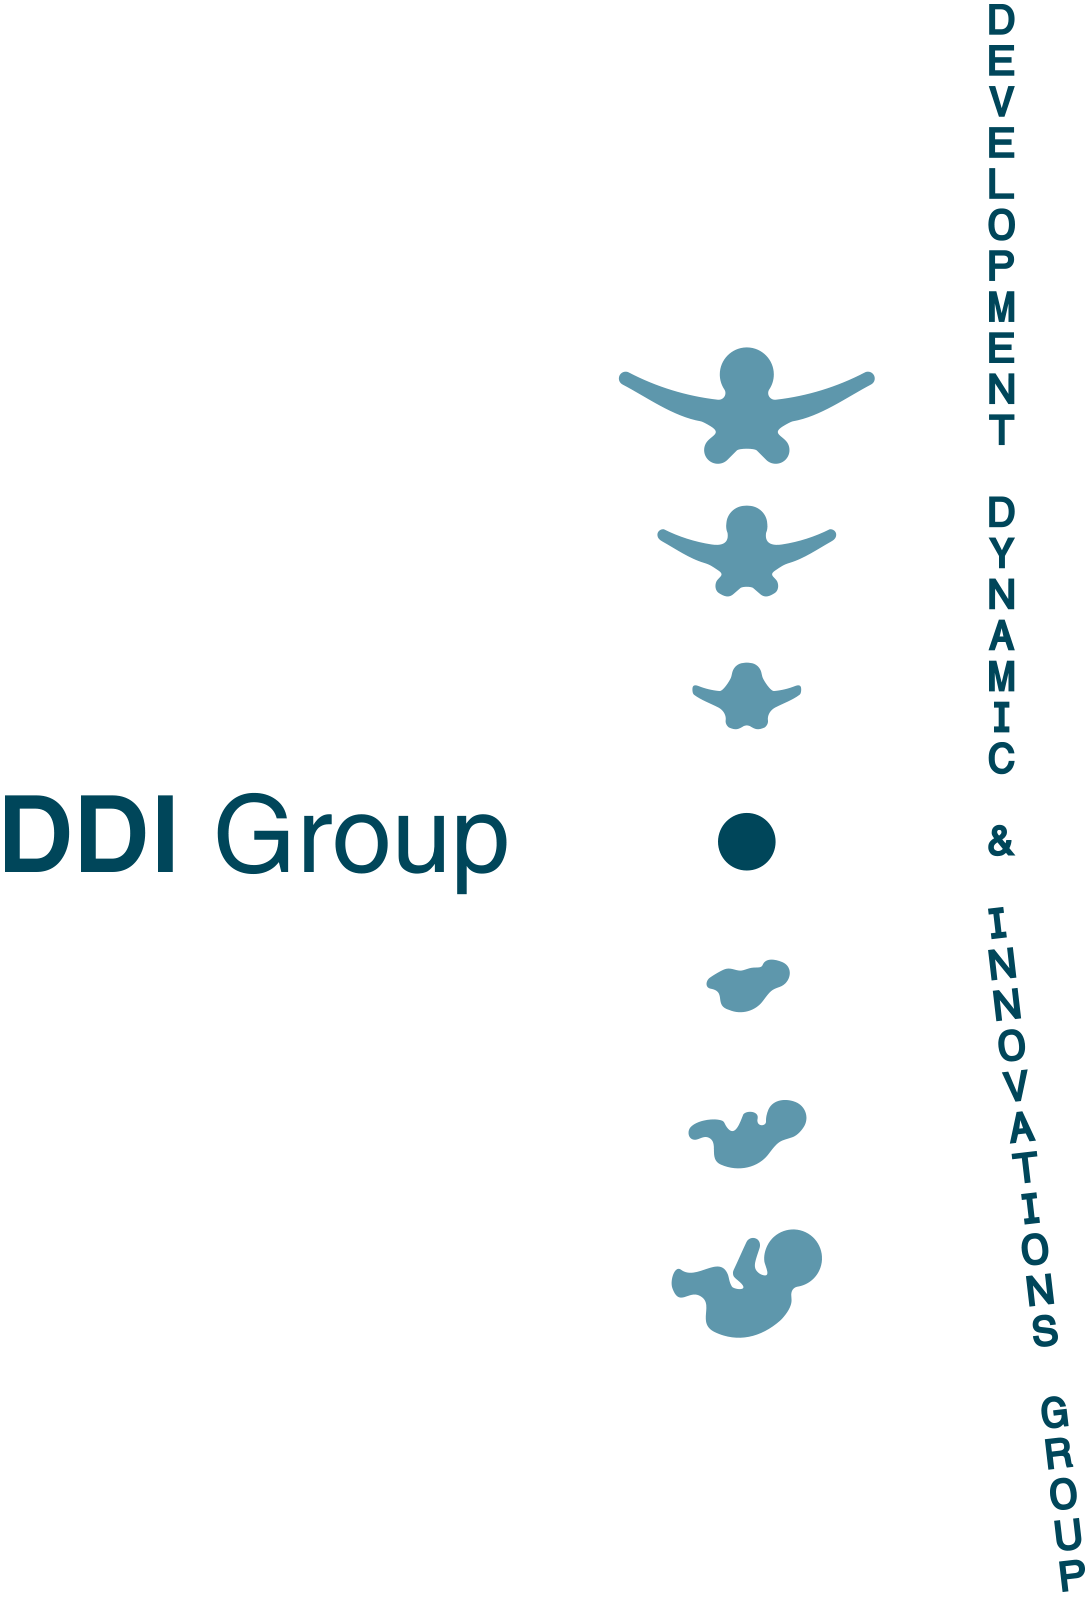 DDI Group